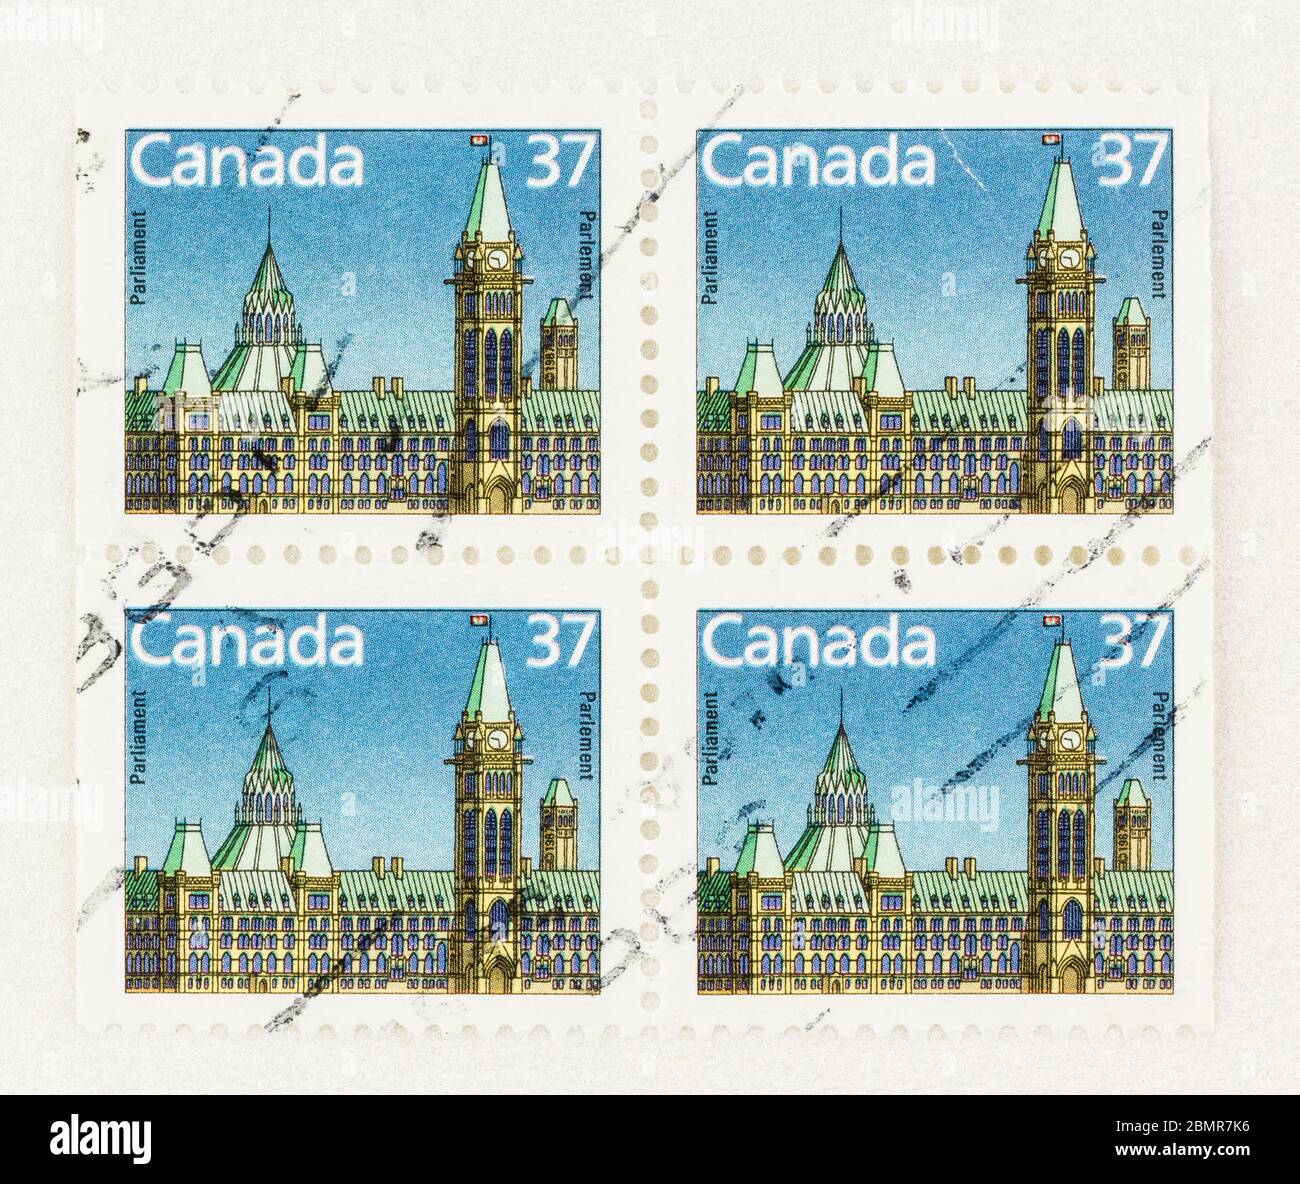 SEATTLE WASHINGTON - 10 maggio 2020: Francobollo canadese definitivo da 37 cent del 1987 con edifici del Parlamento a Ottawa. Scott n. 1163 Foto Stock